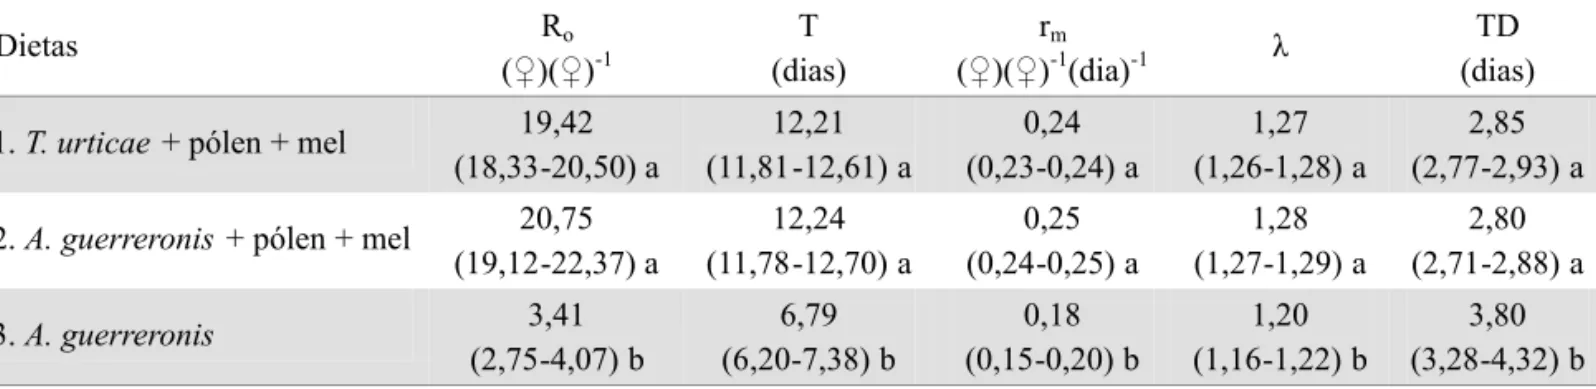 Tabela  3.  Parâmetros  da  tabela  de  vida  de  fertilidade  registrados  para  A.  largoensis  em  três  dietas  alimentares